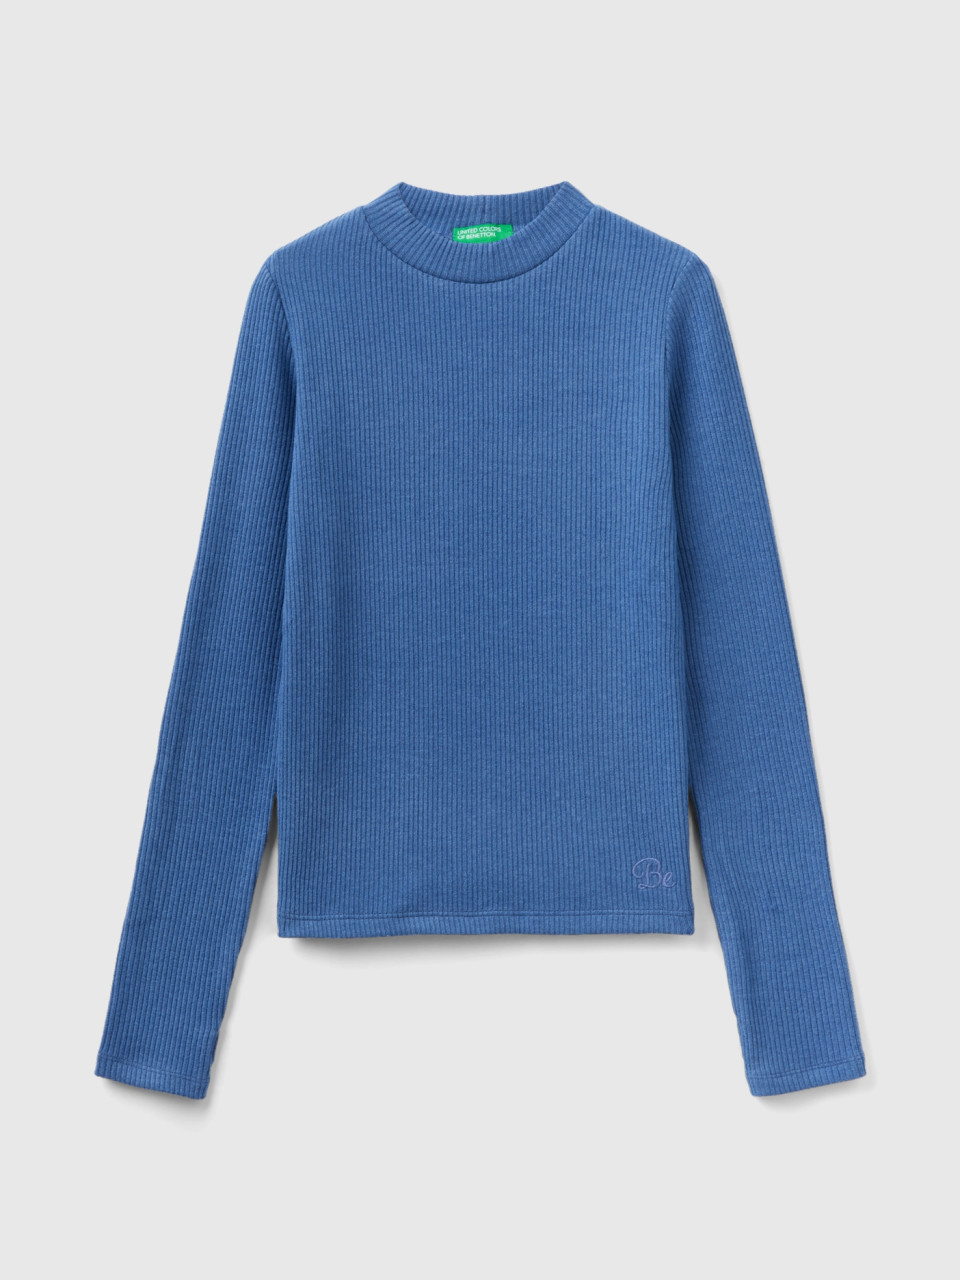 Benetton, T-shirt Chaud Et Ajusté À Bords-côtes, Bleu Horizon, Enfants